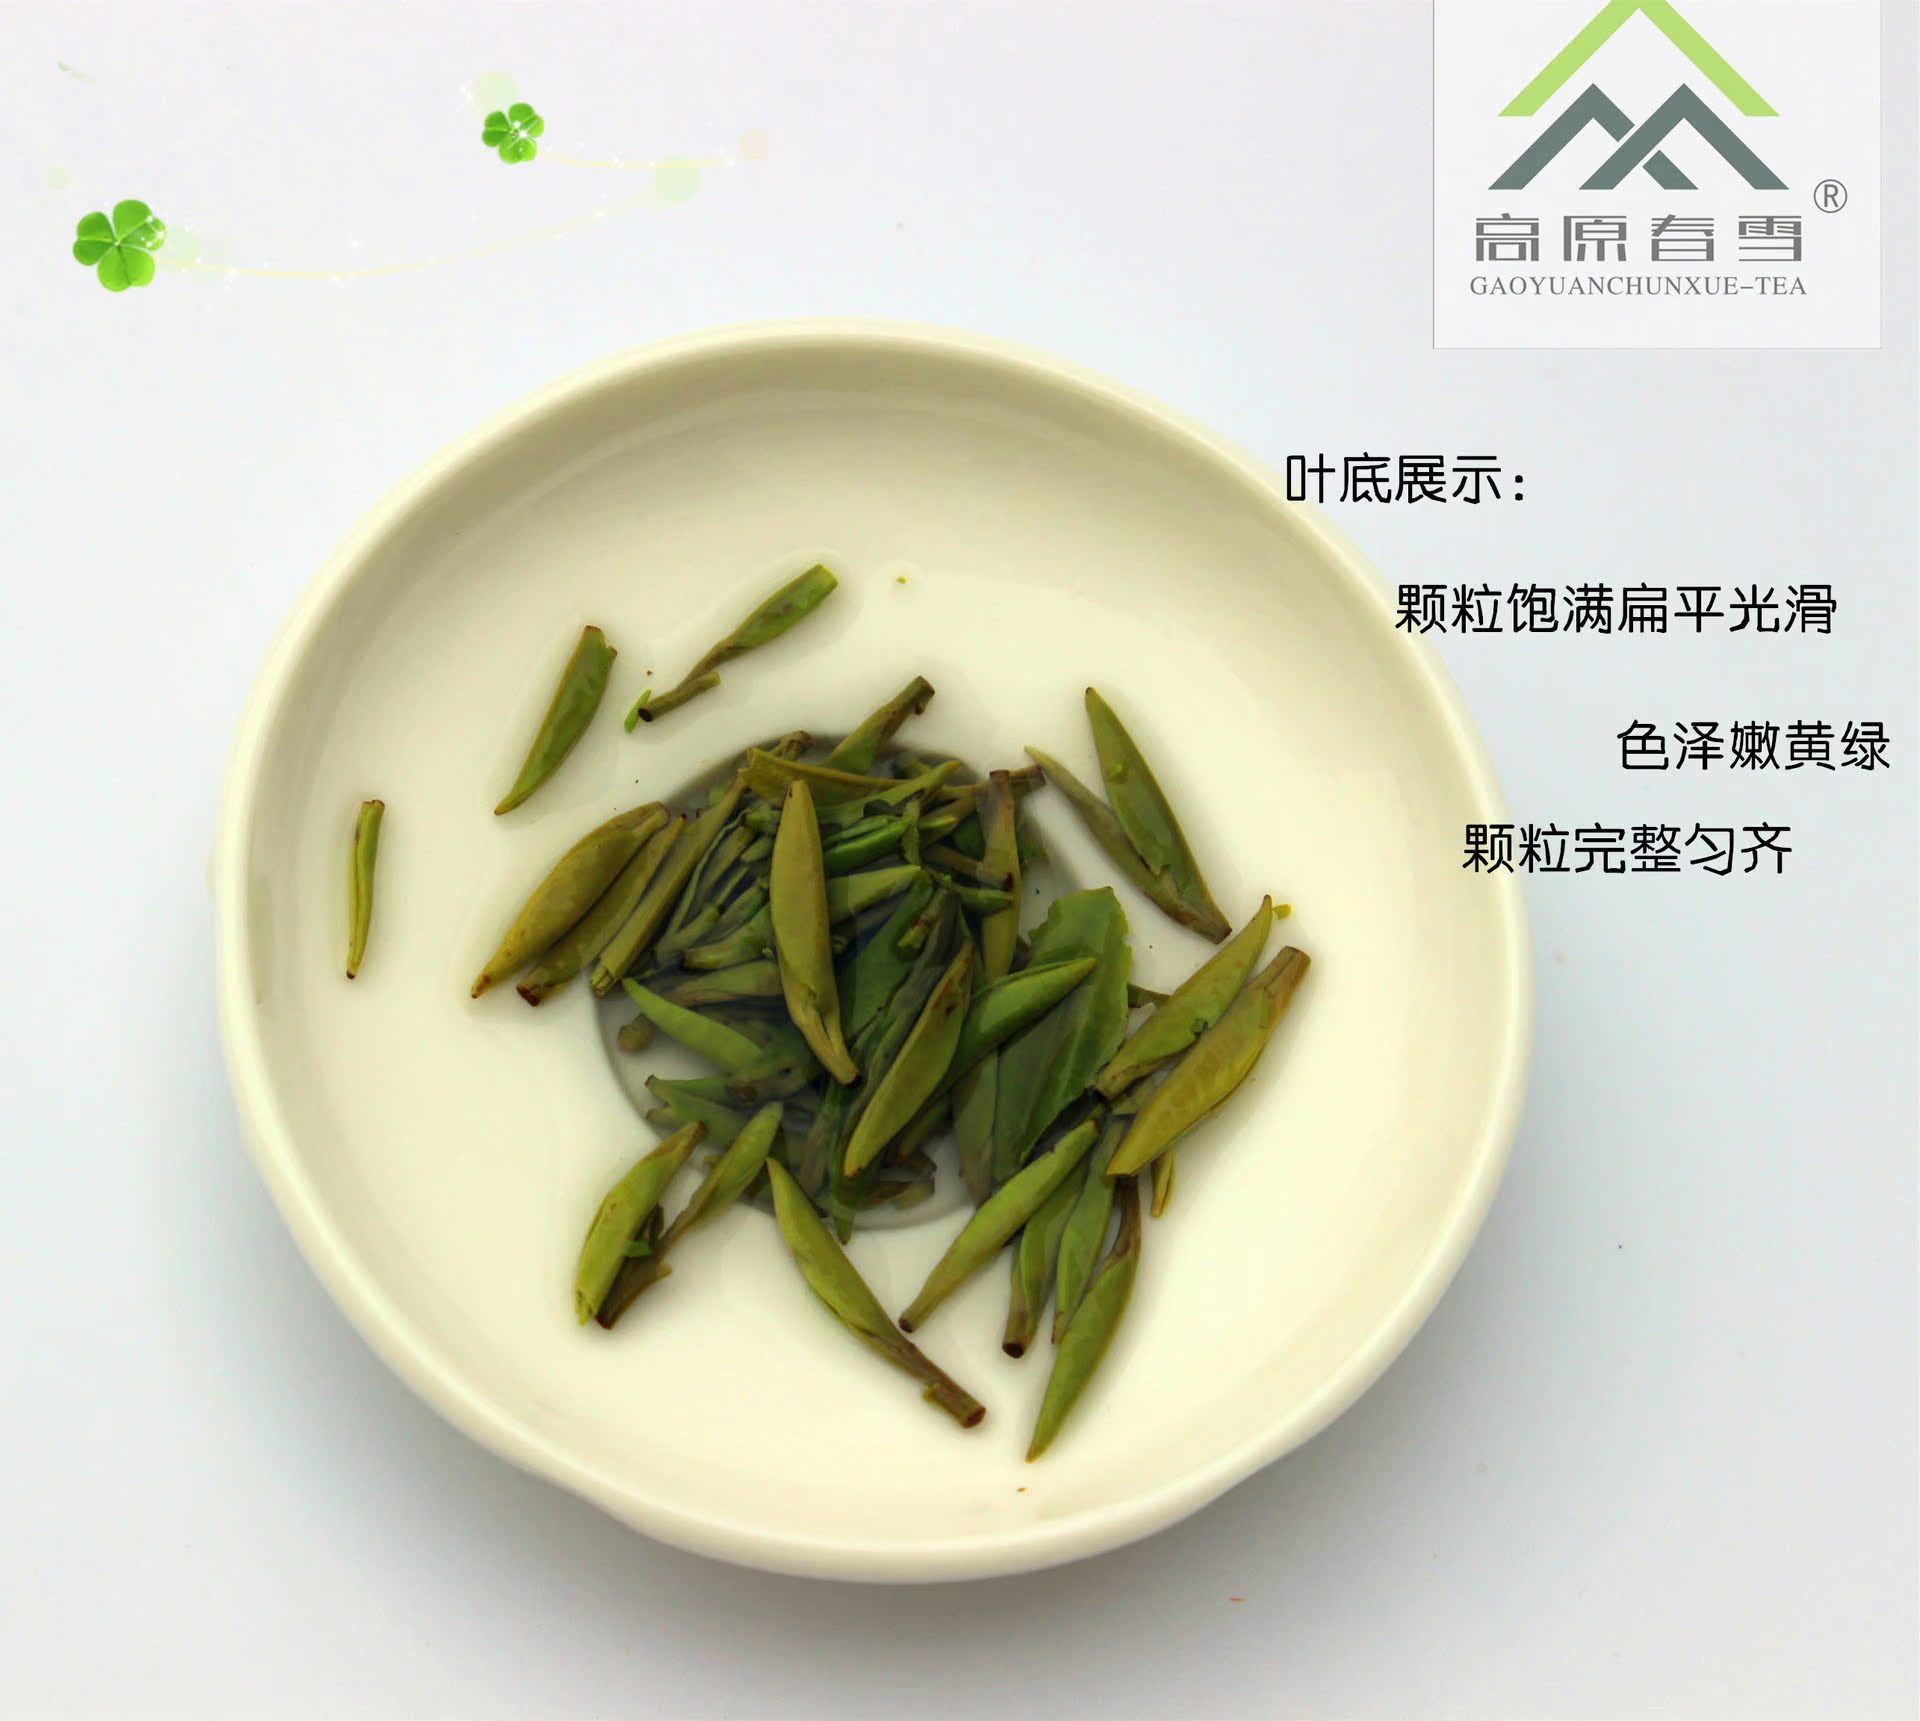 2015年雀舌 湄潭翠芽 贵州金奖绿茶 茶叶 厂家直销 烟条装120g